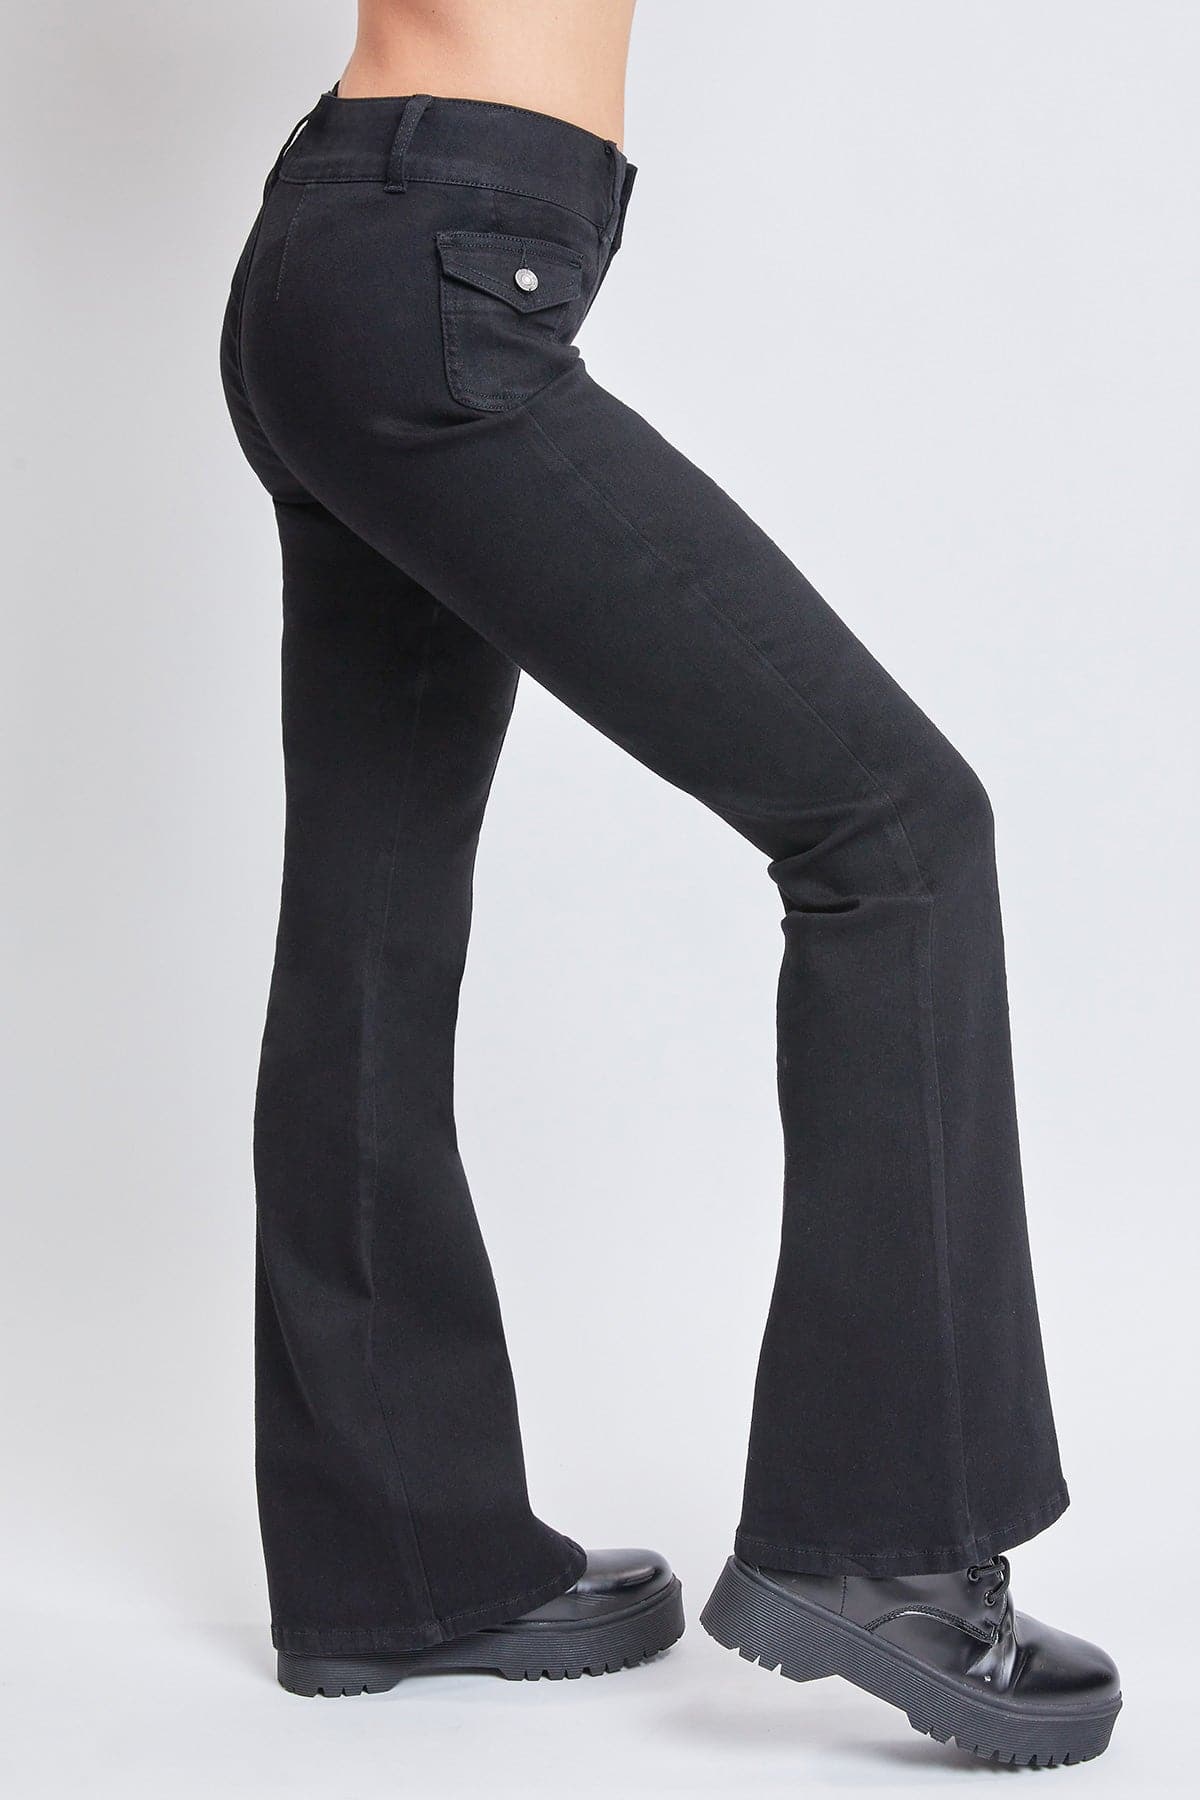 Women's Cargo Flare Jeans